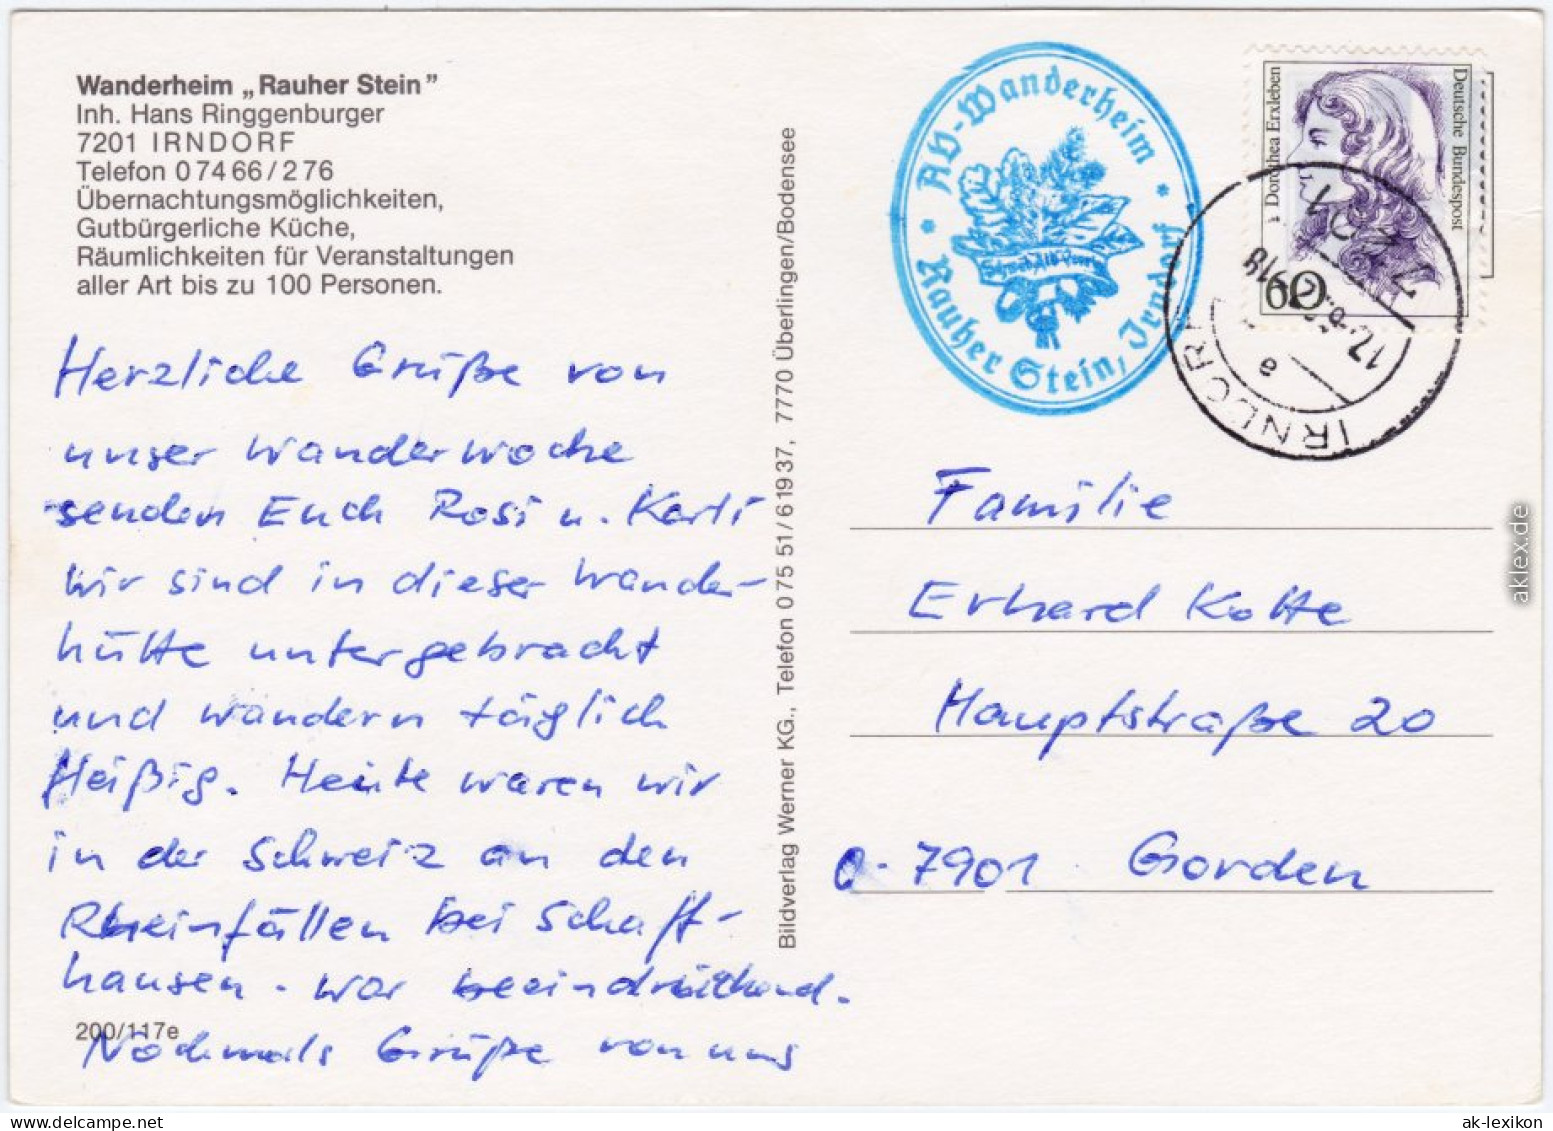 Irndorf Wanderheim "Rauher Stein",  Außen- Und Innenansicht Mit Gästeraum 1992 - Other & Unclassified